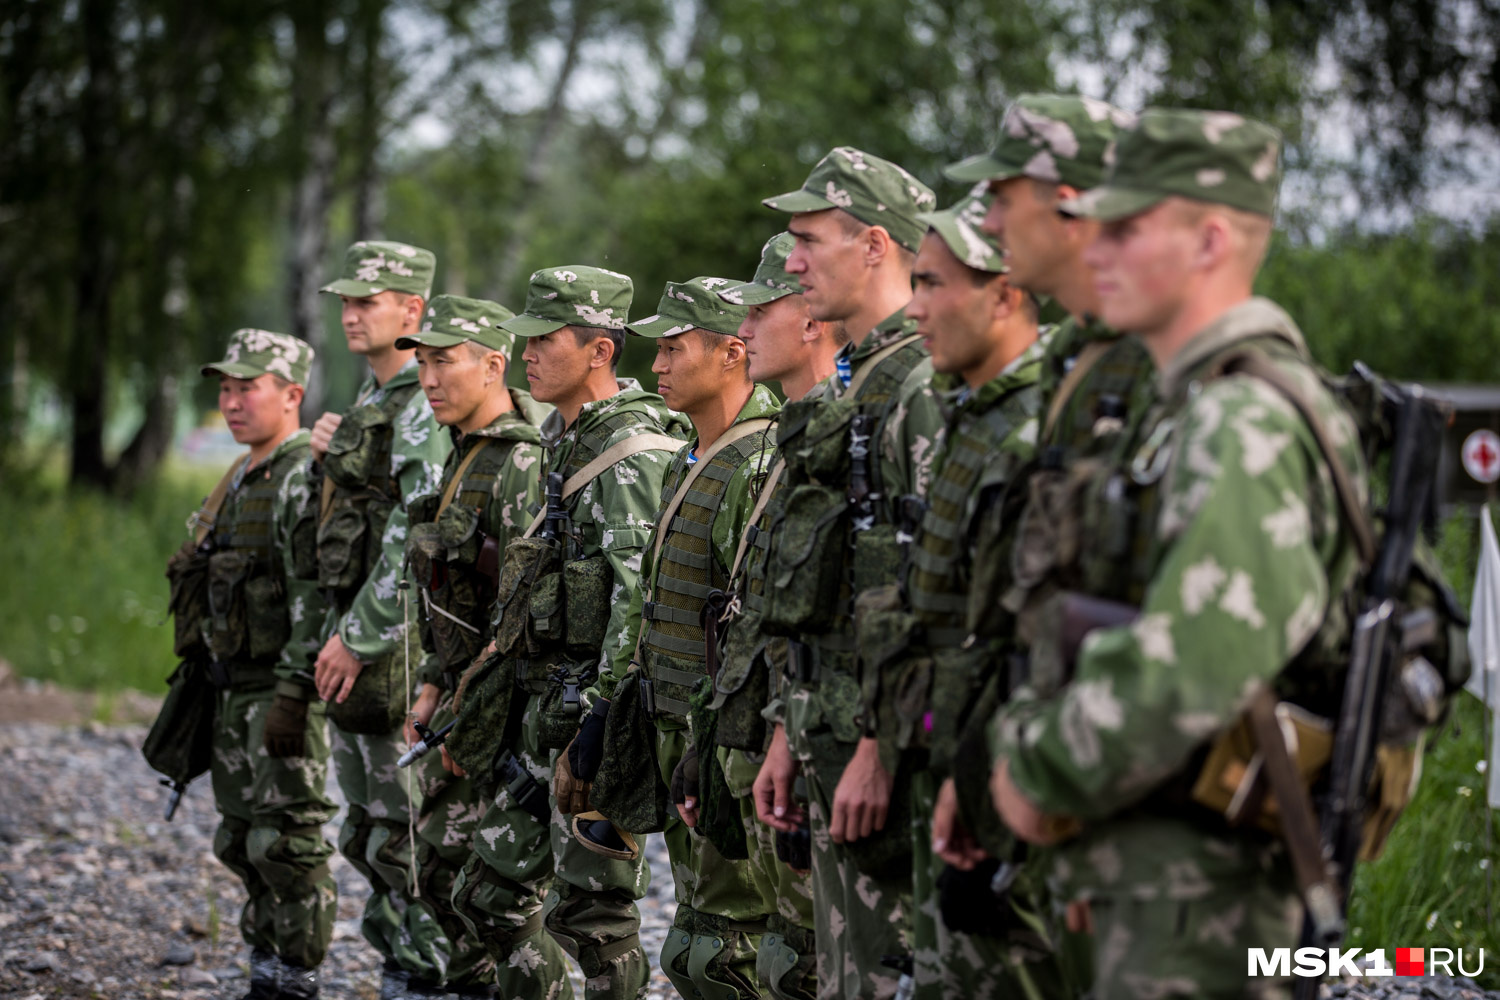 Как изменятся ход СВО и ситуация на фронте с новым главой Минобороны Белоусовым Отвечают военные эксперты